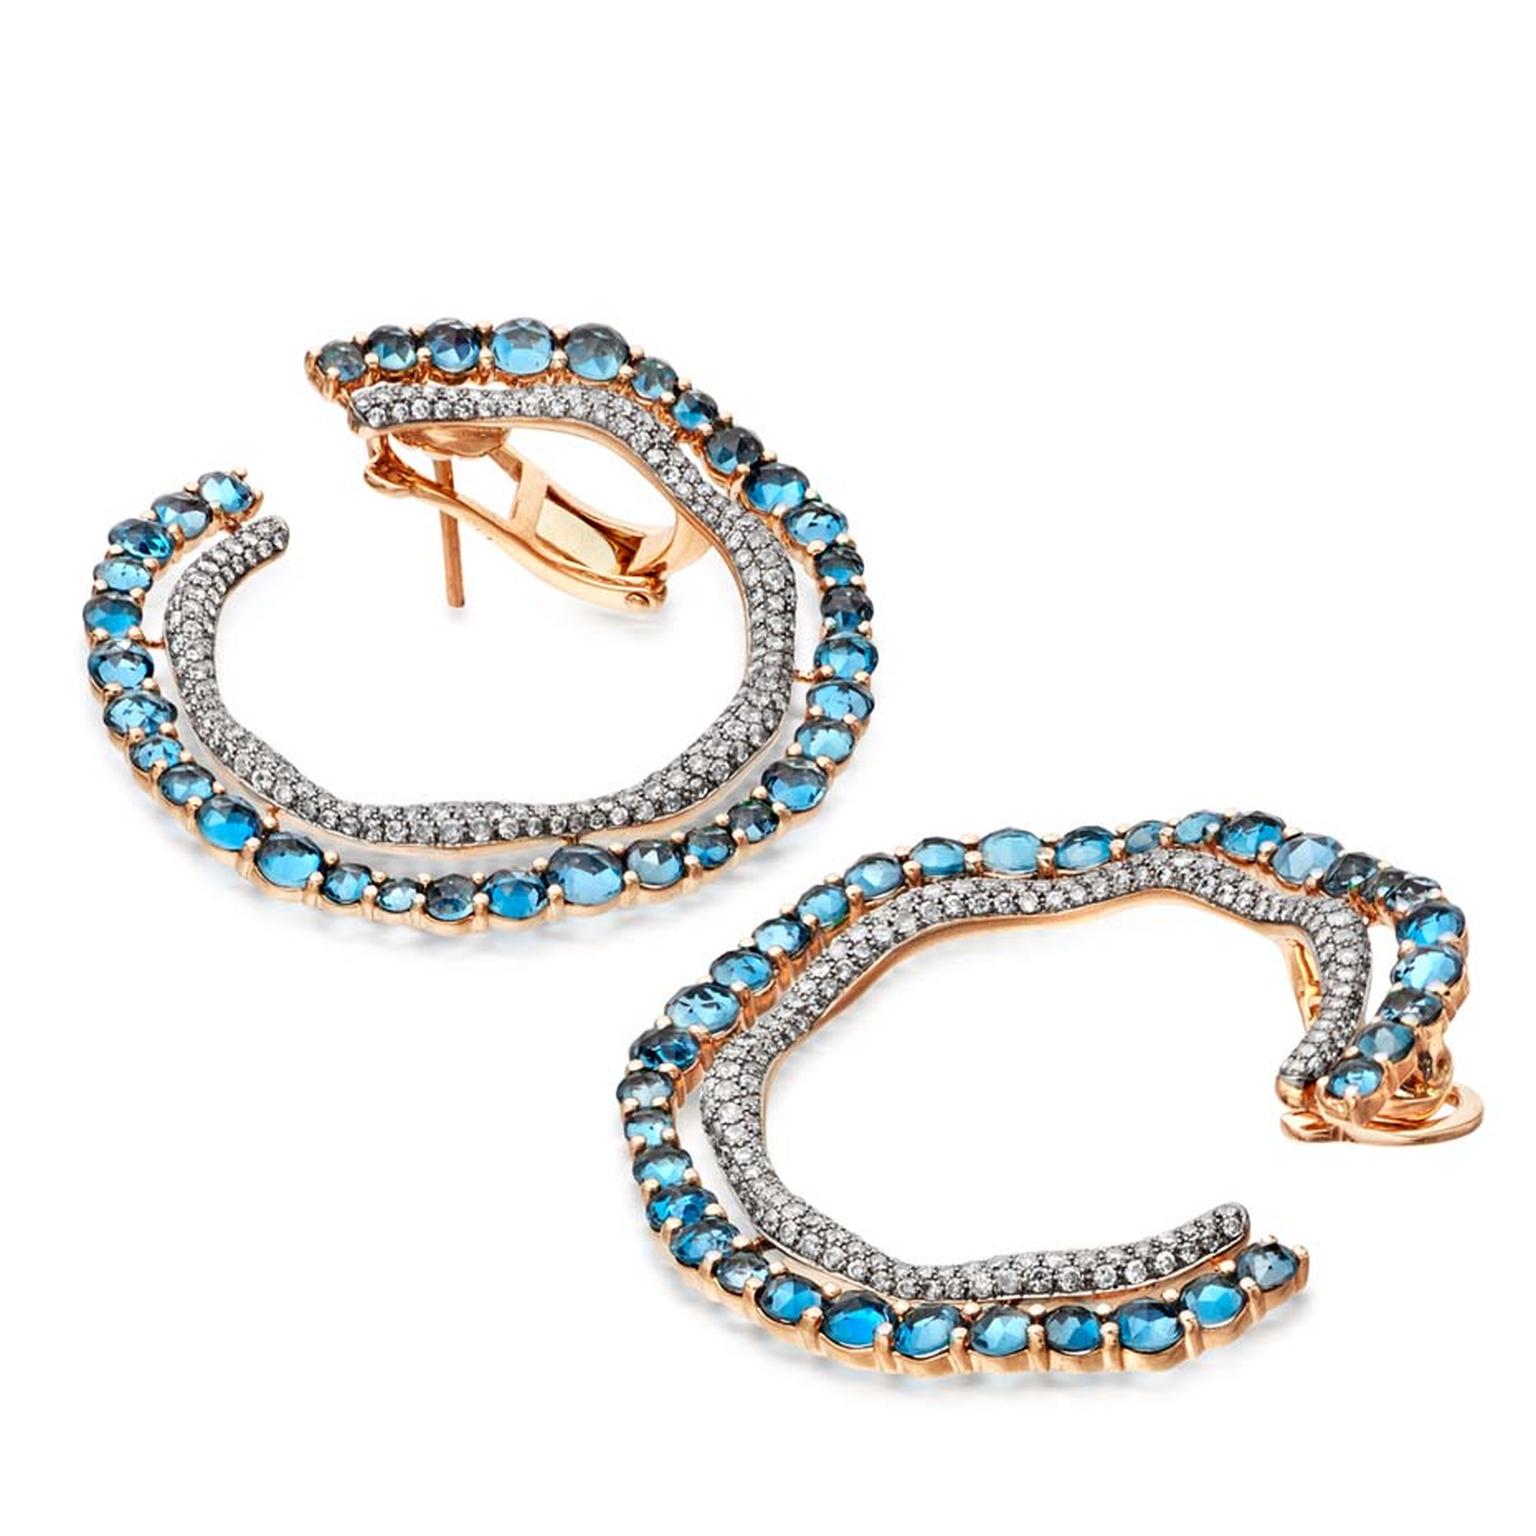 Astley Clarke Fao hoop earrings featuring London blue topaz and diamonds (£6,750).